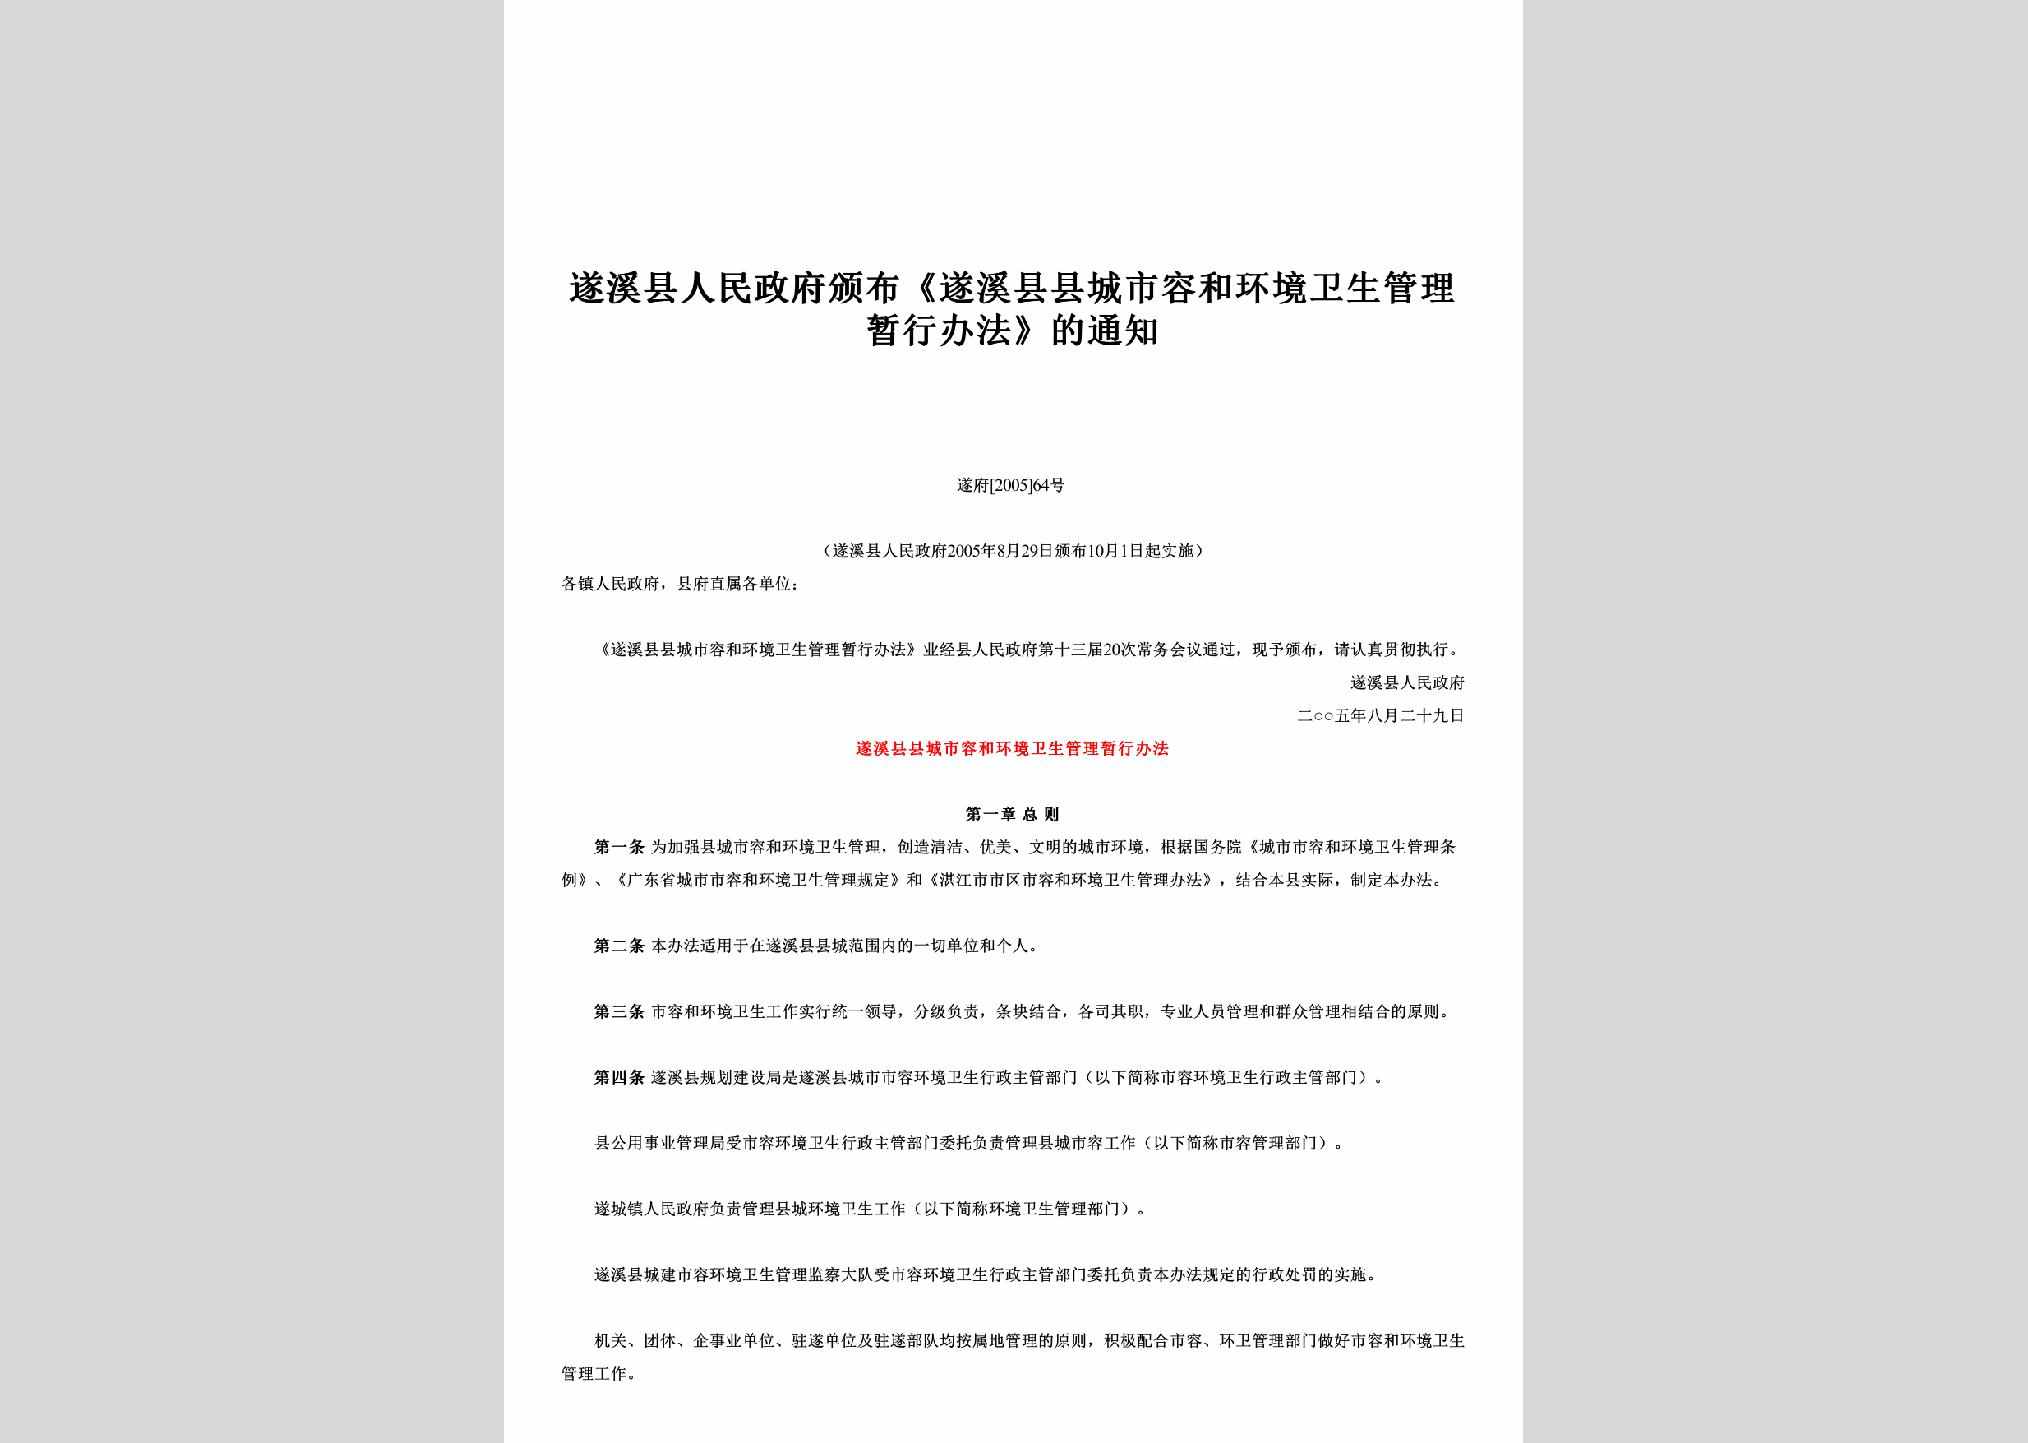 遂府[2005]64号：颁布《遂溪县县城市容和环境卫生管理暂行办法》的通知